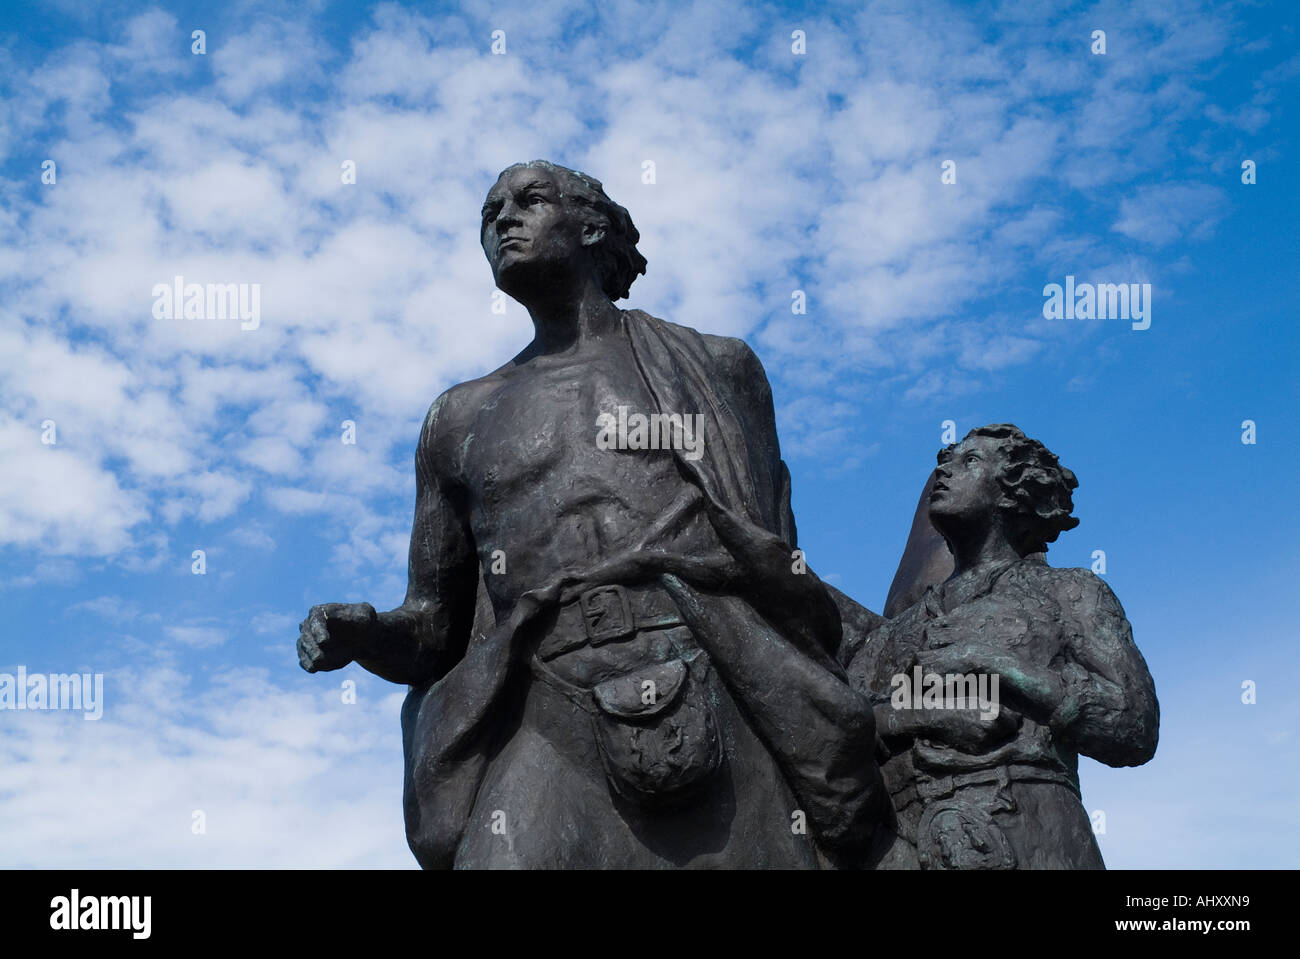 DH Highland déstockage HELMSDALE SUTHERLAND Scottish les émigrants 30 pieds de la famille statue de bronze dégagera les monuments historiques de l'ecosse Banque D'Images